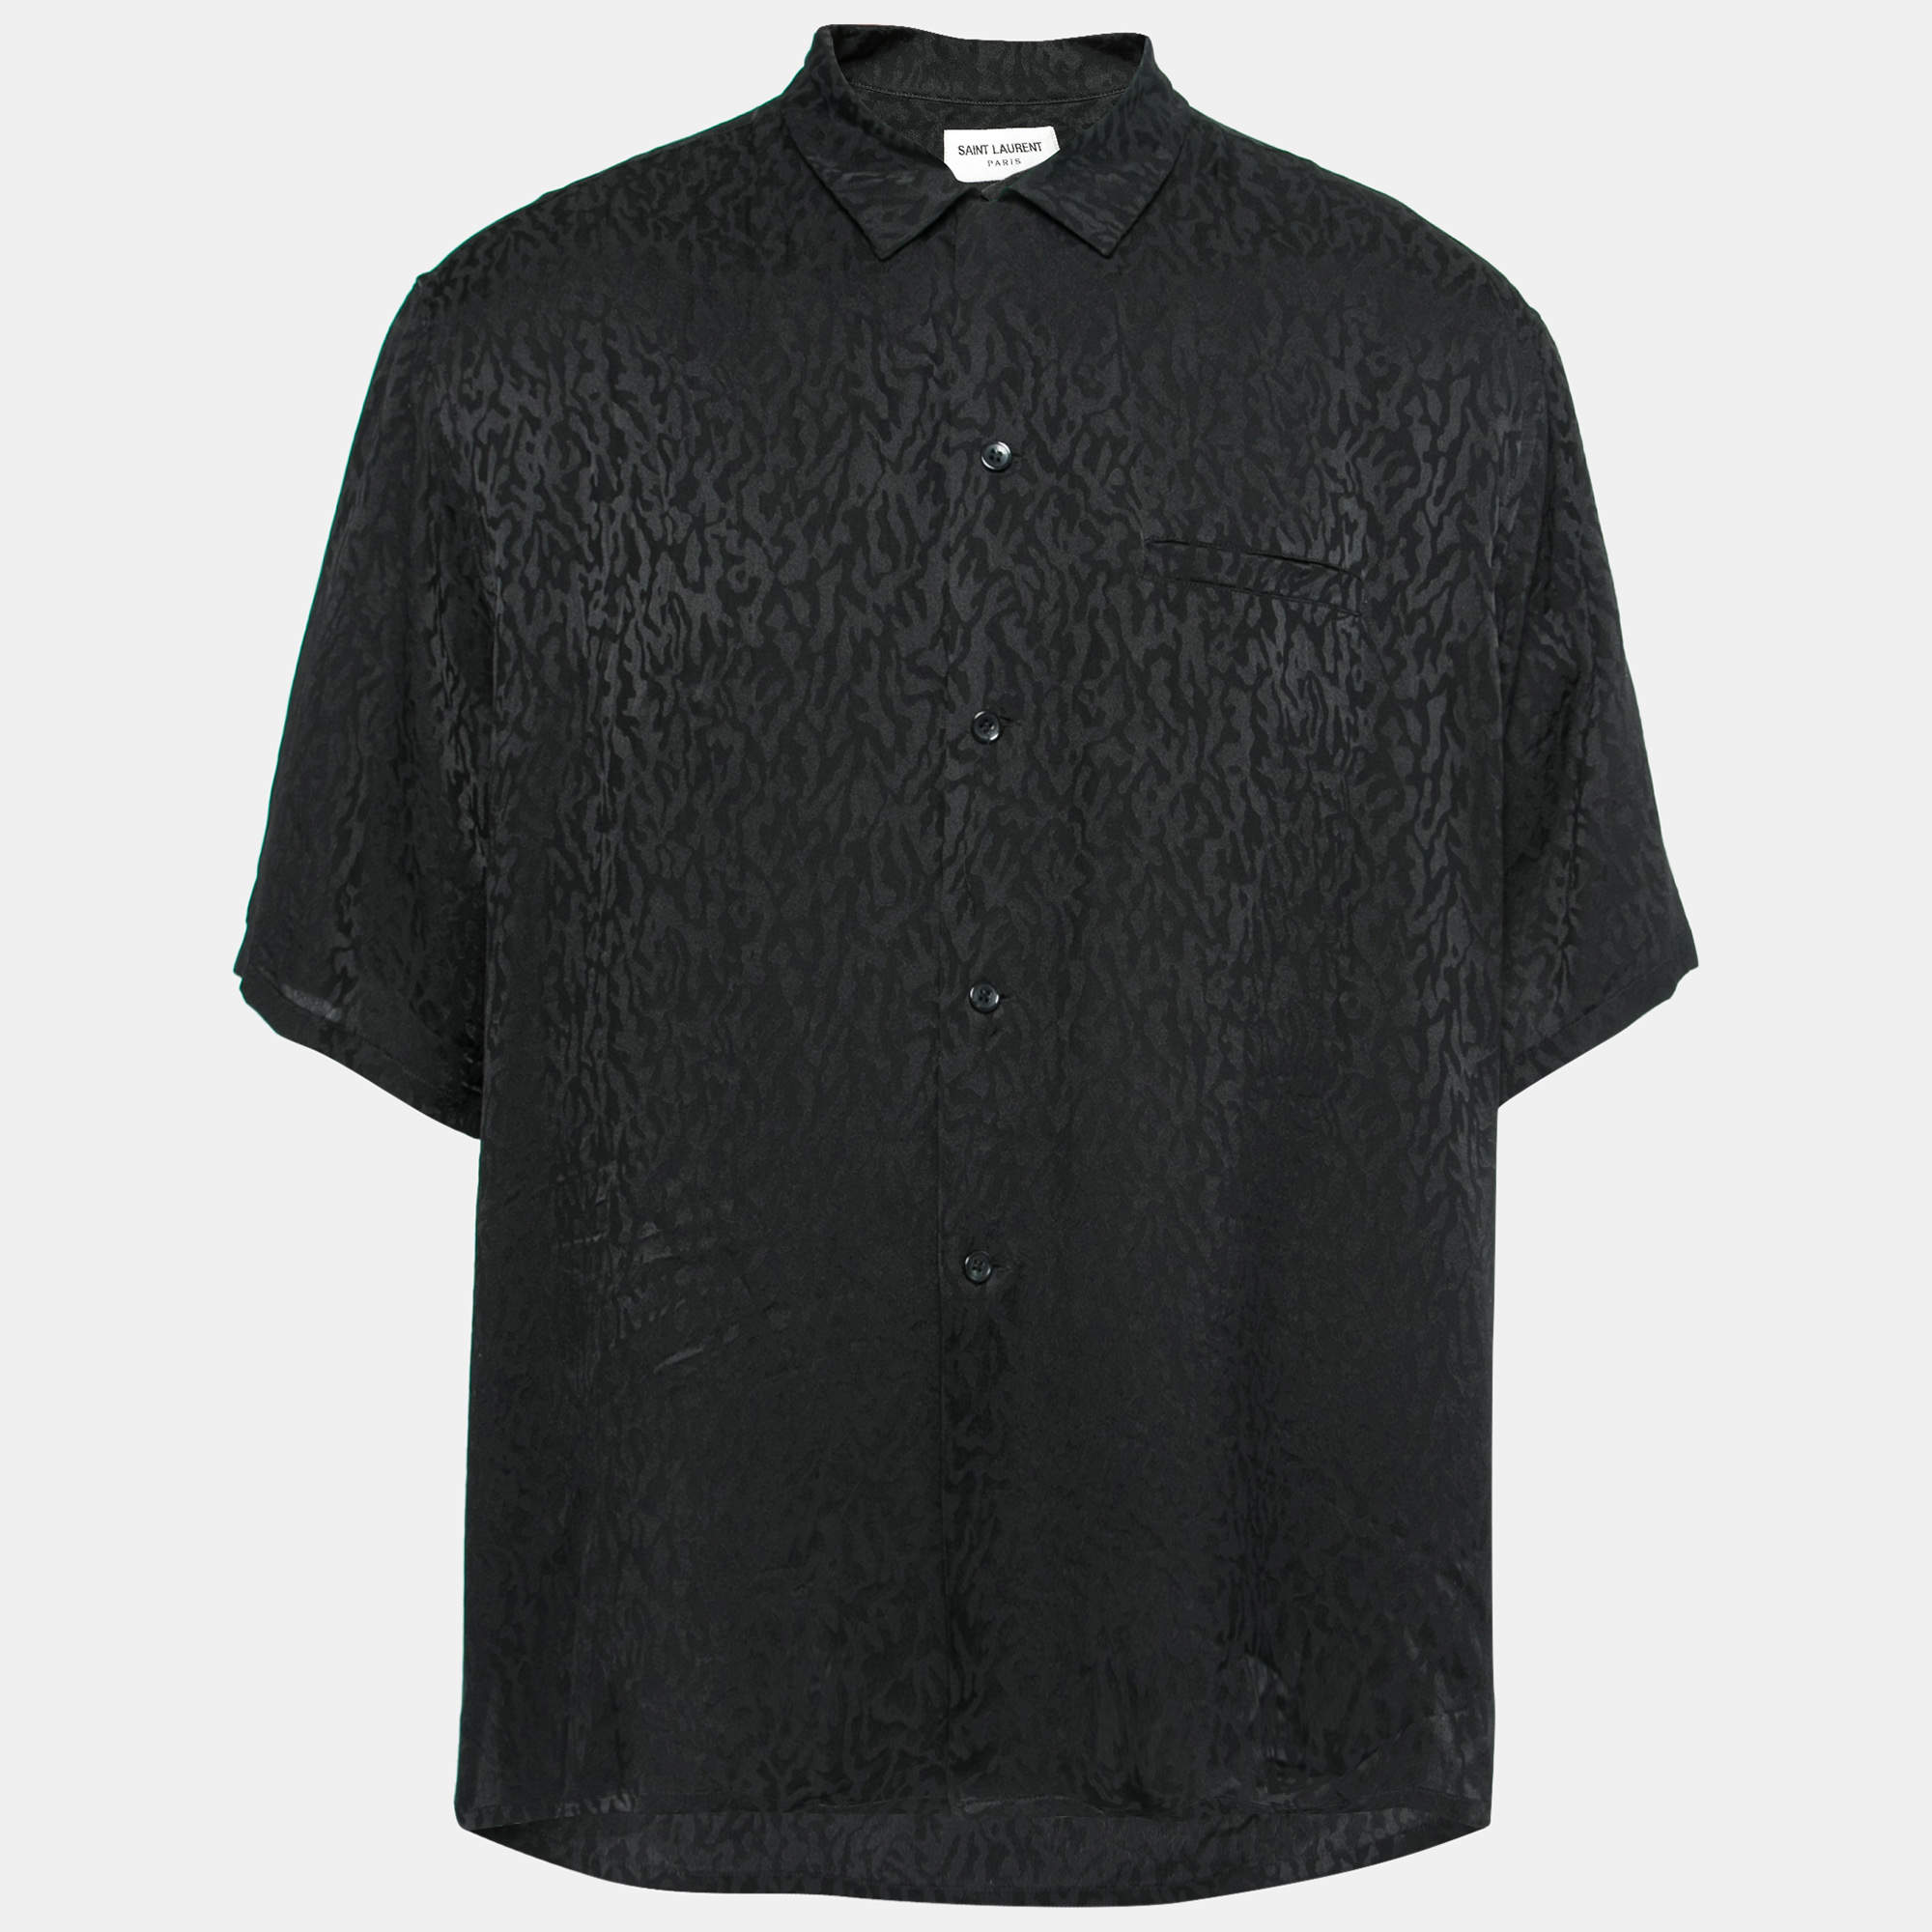 قميص سان لوران حرير أسود بأكمام قصيرة بأزرار أمامية مقاس كبير جدًا جدًا جدًا - إكس إكس إكس لارج